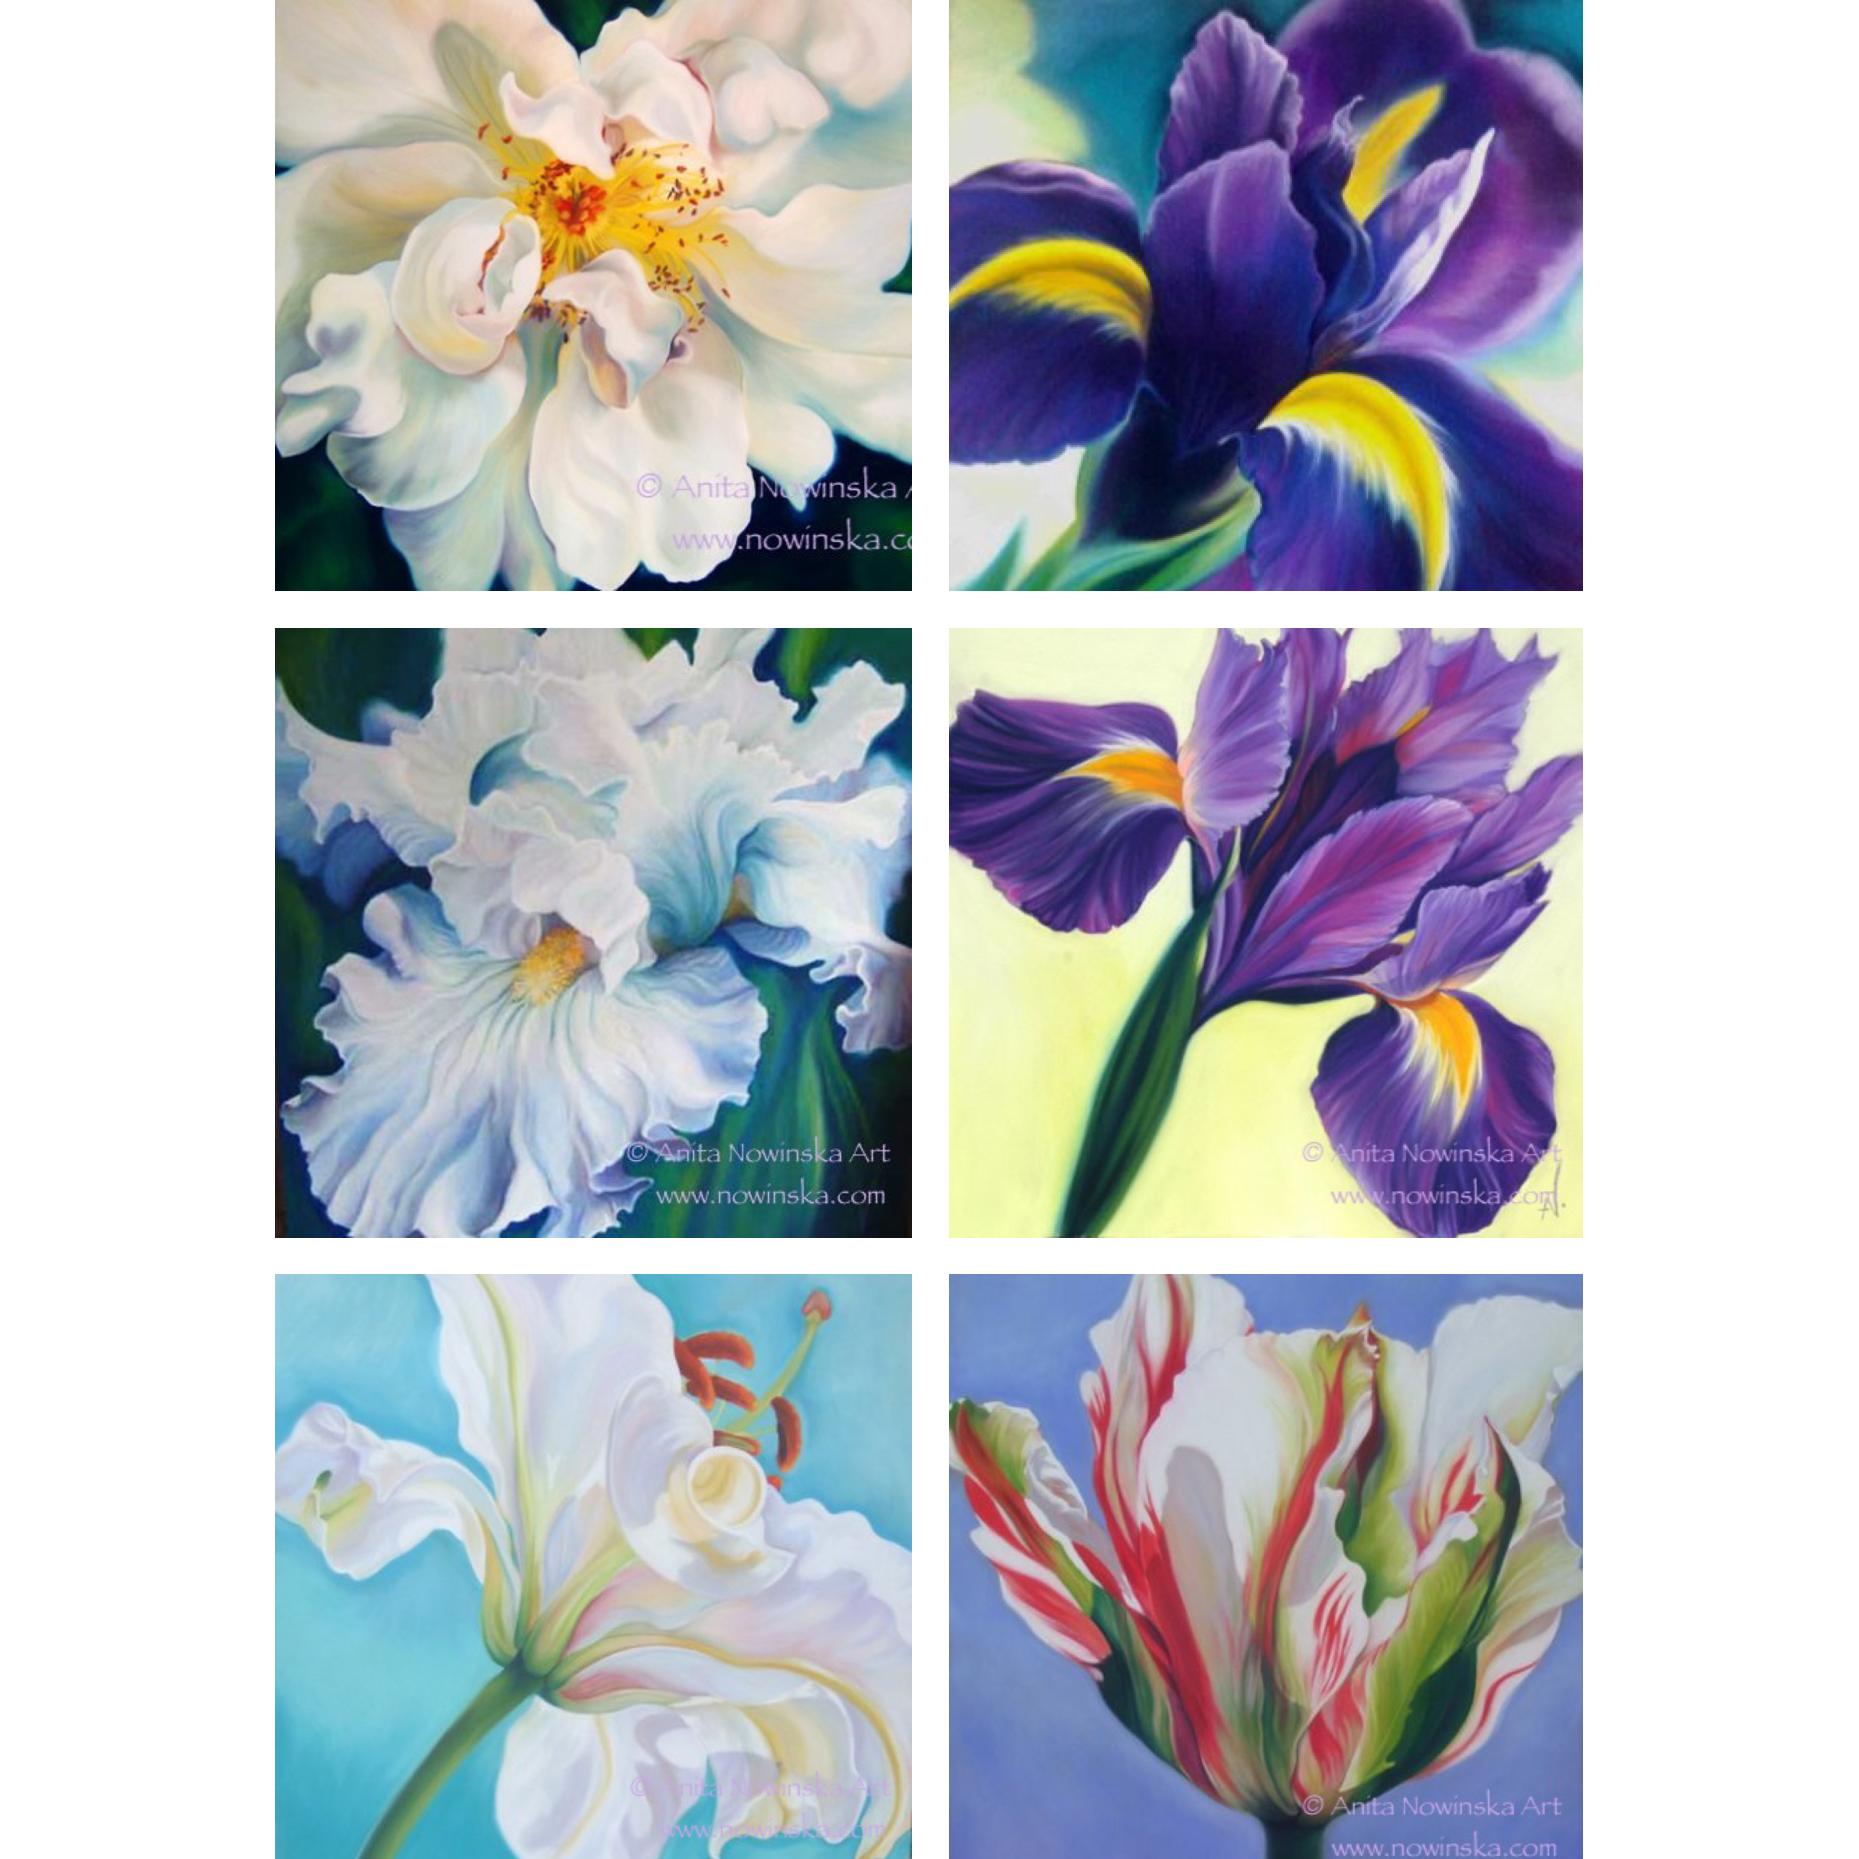 greetings cards-flower paintings-anita nowinska